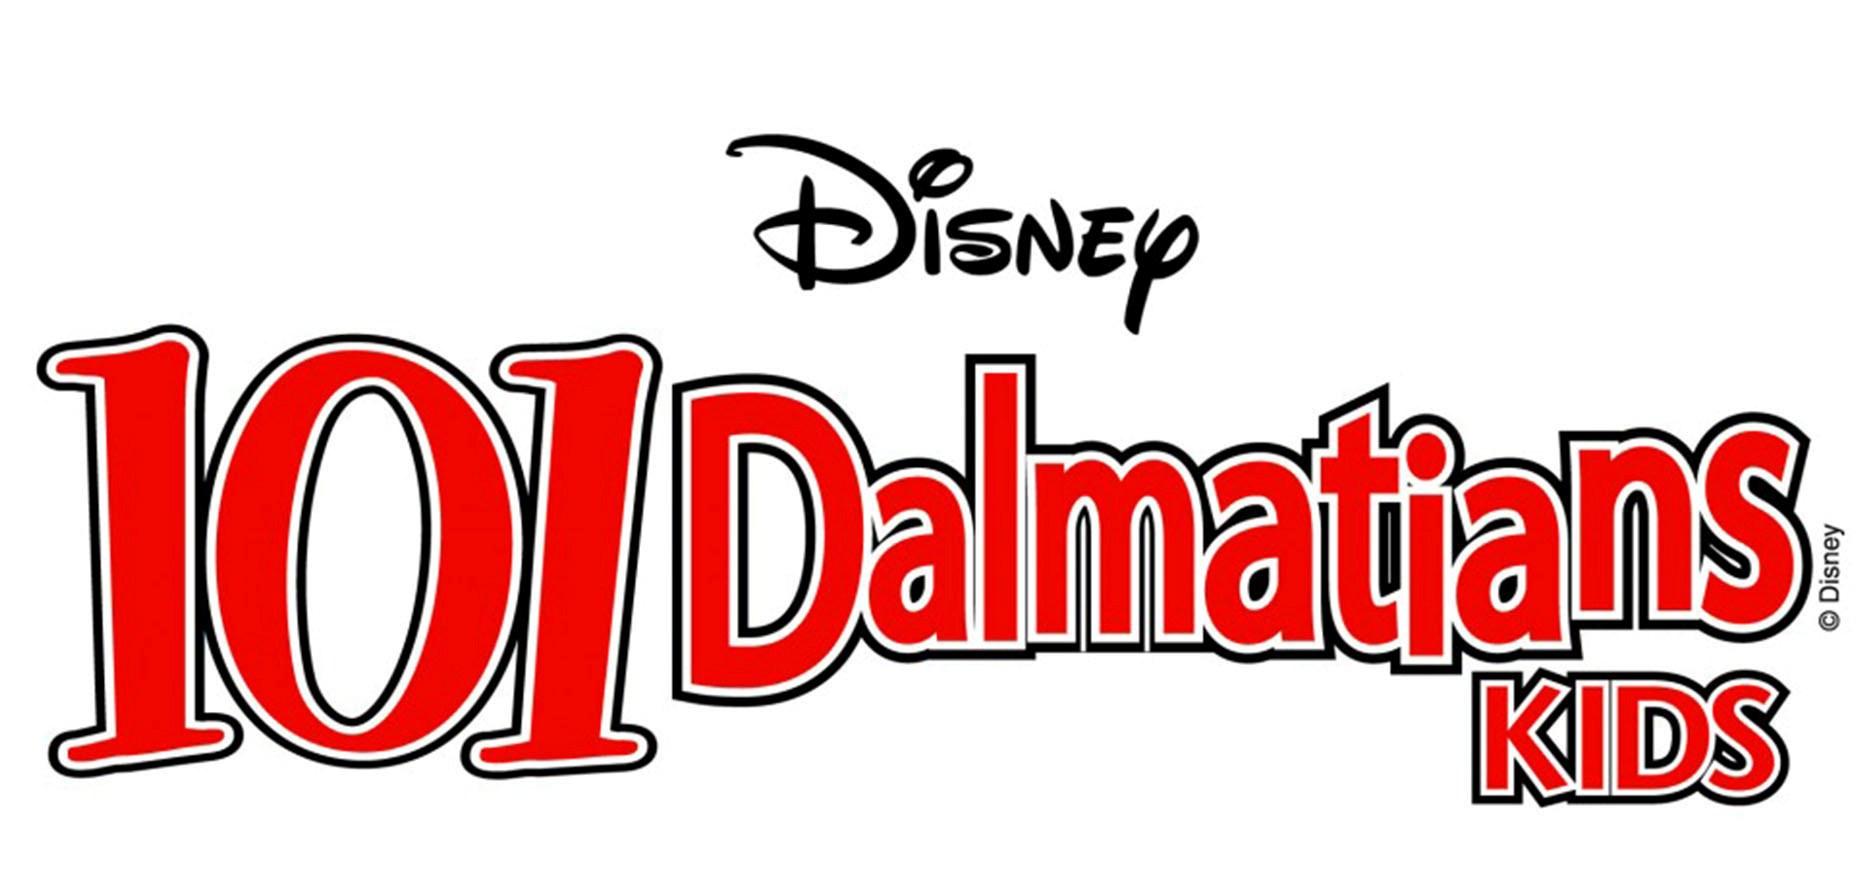 101 Dalmatians Logo - 101-dalmatians-logo - Community School of the Arts